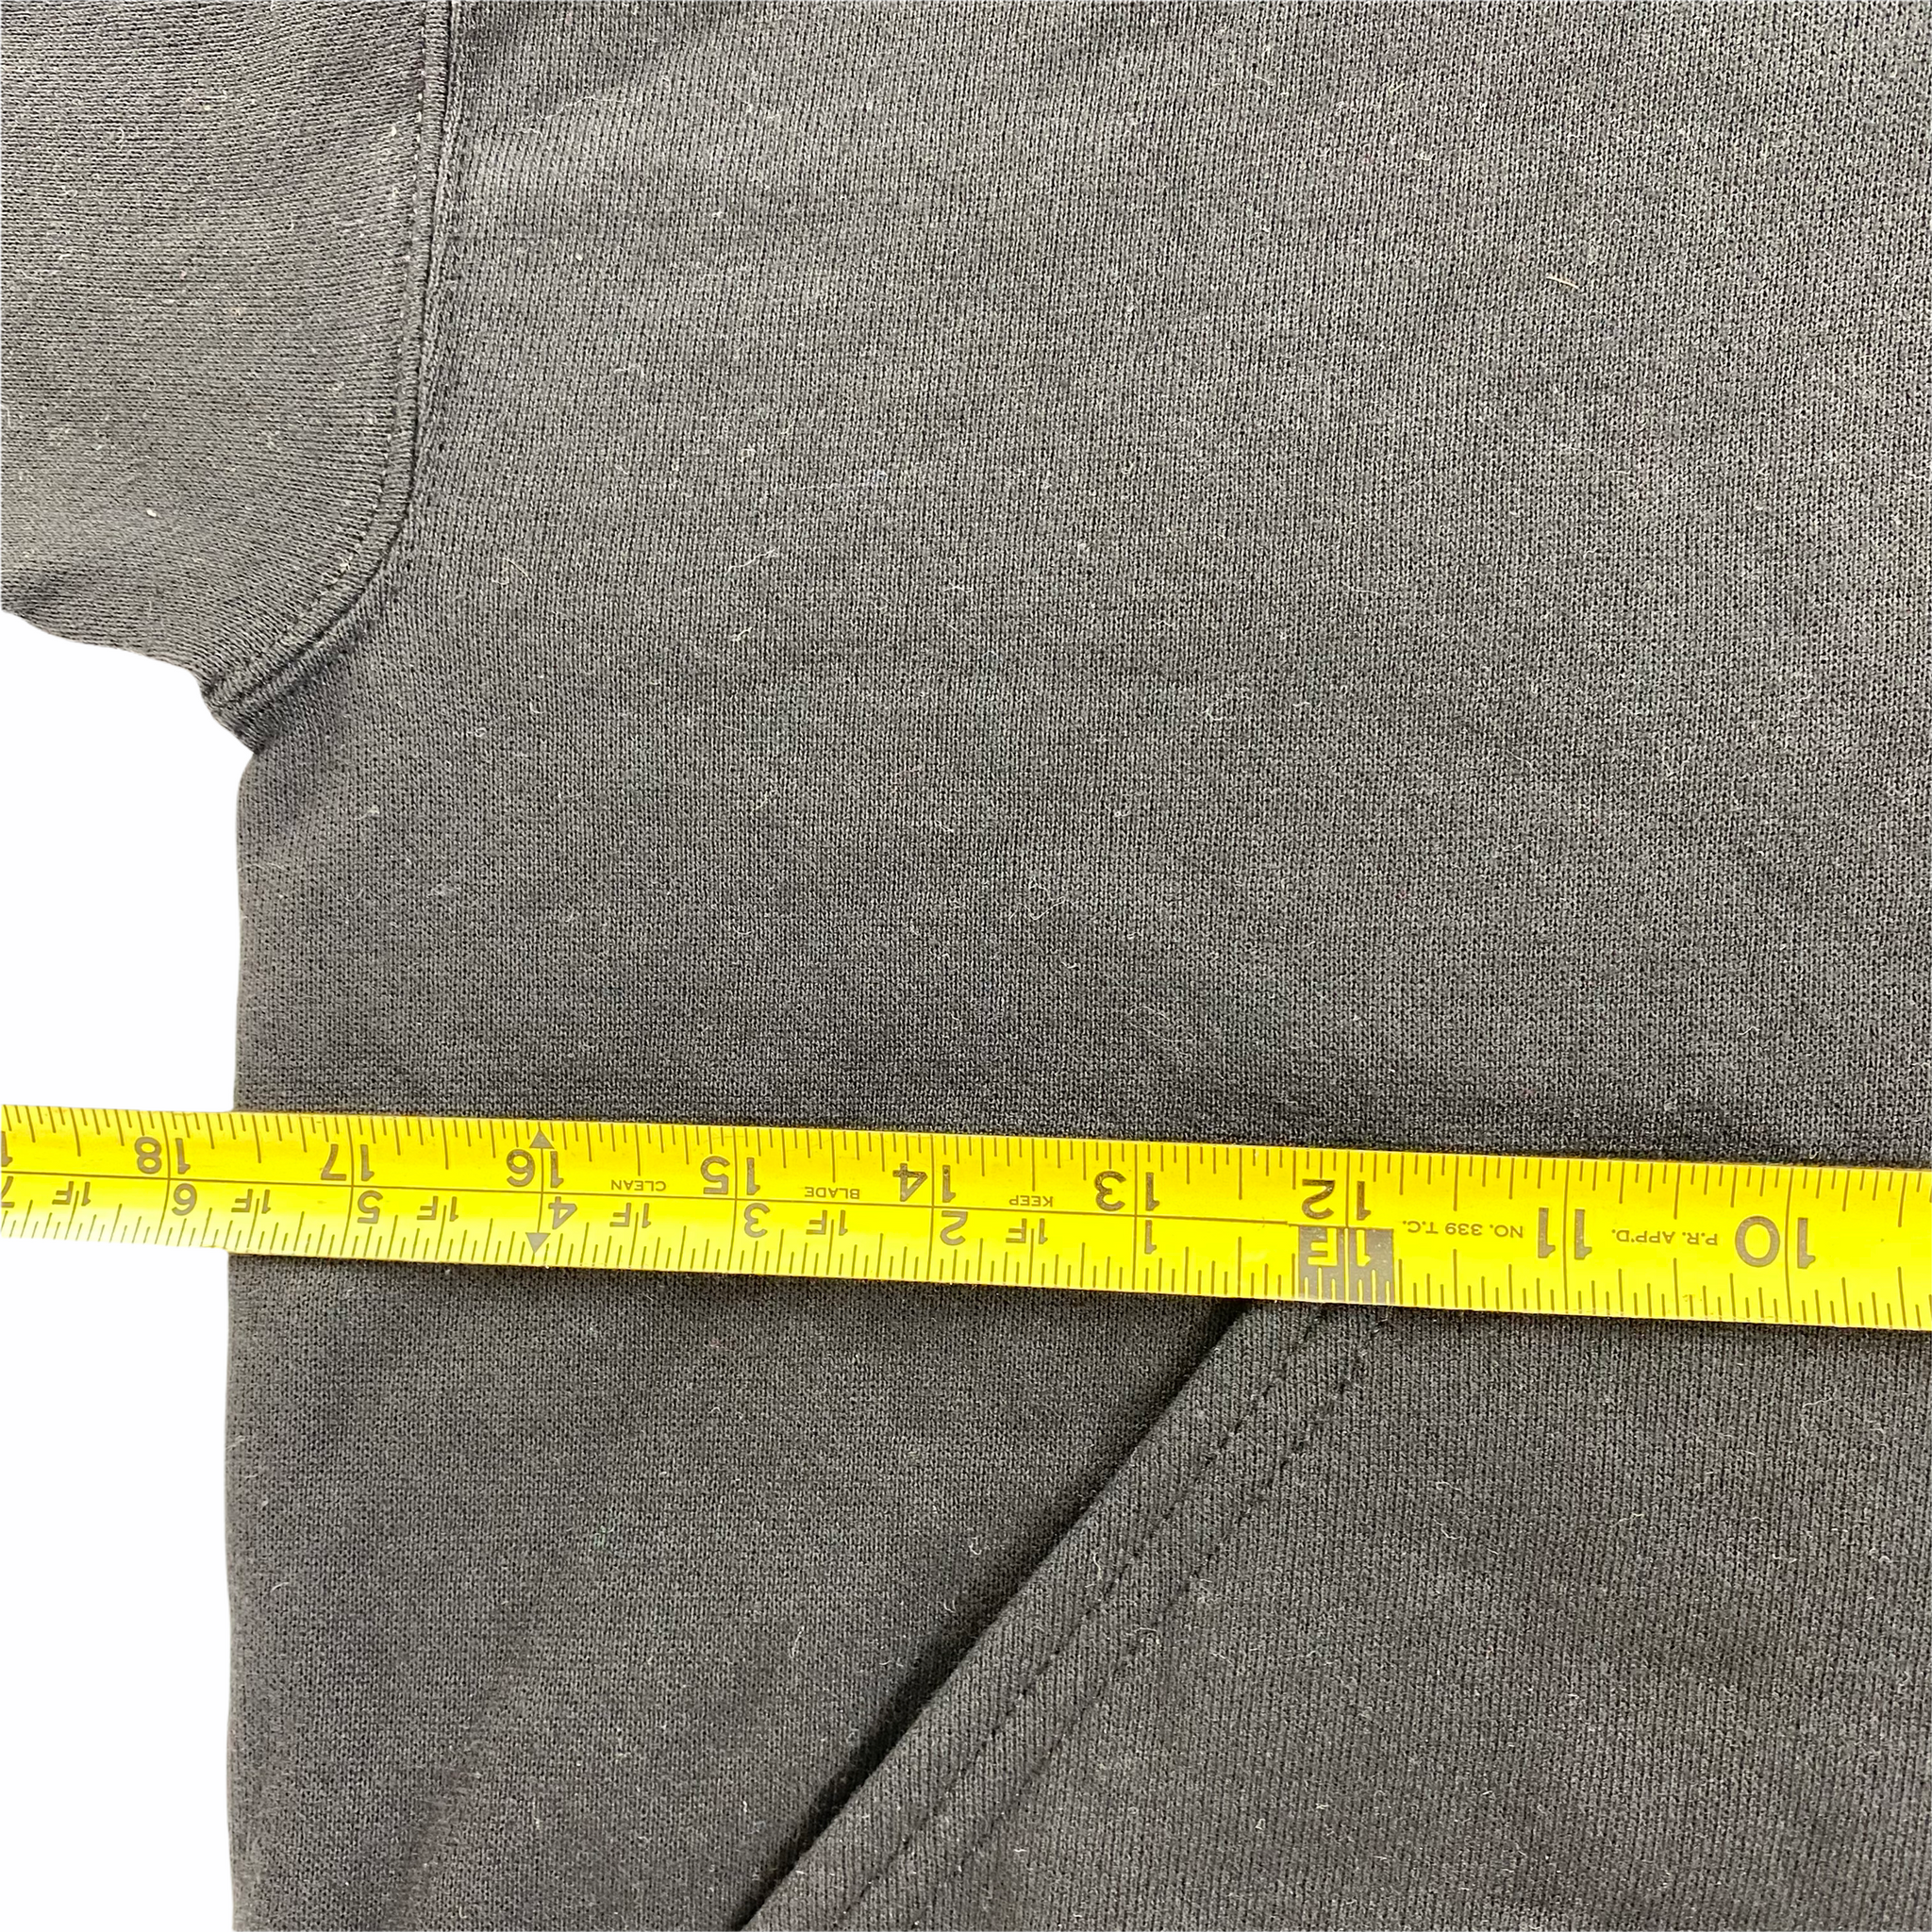 90s Blank hooded sweatshirt. XXS (18x20)